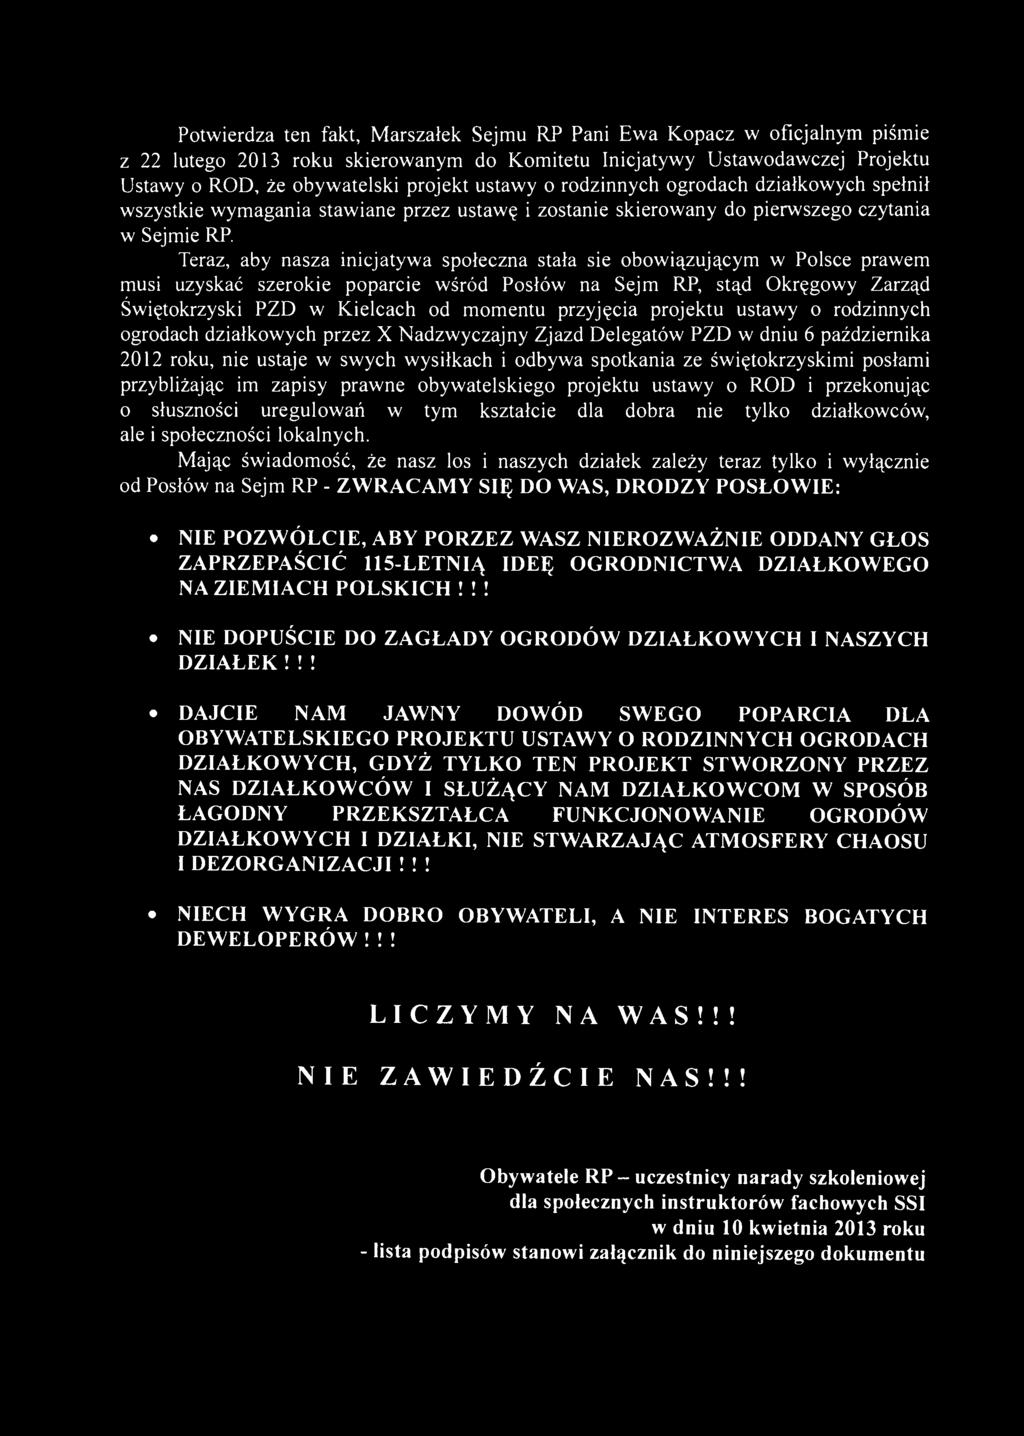 Potwierdza ten fakt, Marszałek Sejmu RP Pani Ewa Kopacz w oficjalnym piśmie z 22 lutego 2013 roku skierowanym do Komitetu Inicjatywy Ustawodawczej Projektu Ustawy o ROD, że obywatelski projekt ustawy